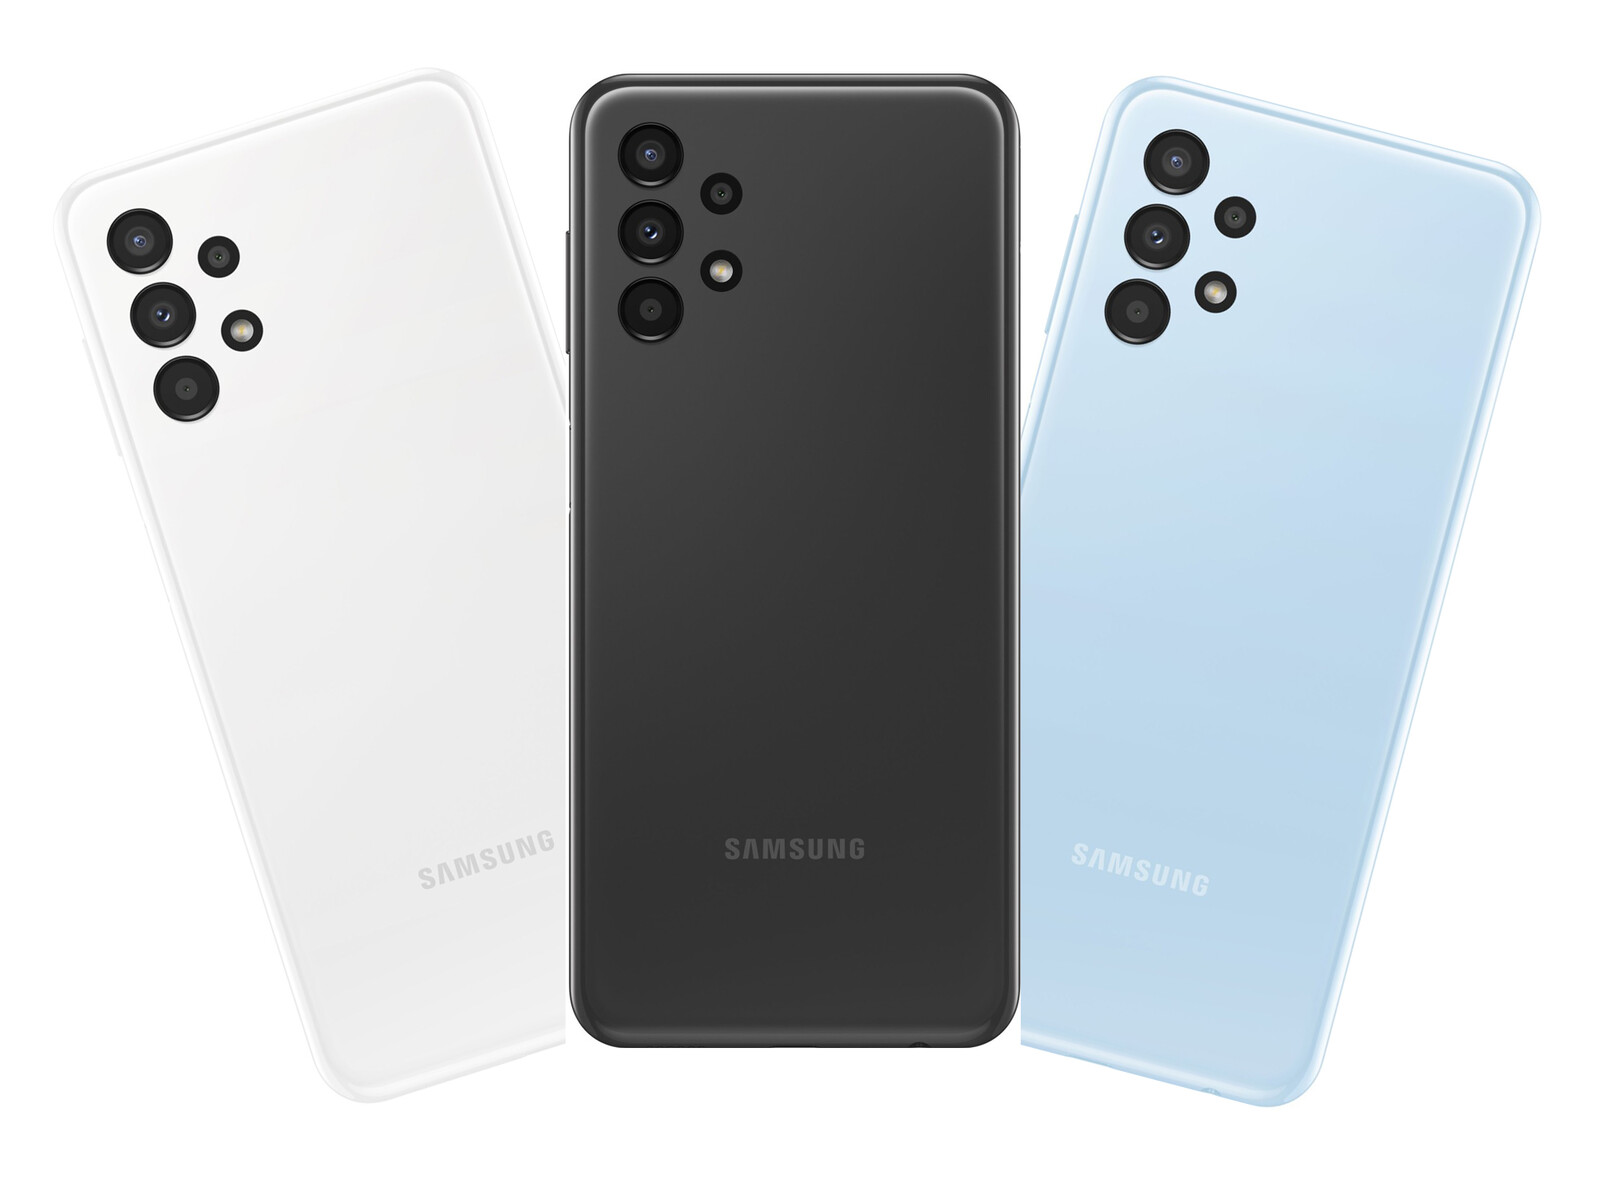 Samsung - Với thiết kế thời trang và chất lượng tuyệt vời, điện thoại của Samsung luôn là lựa chọn hàng đầu của người dùng trên toàn thế giới. Hãy xem hình ảnh liên quan đến Samsung để khám phá sự tiên tiến và đổi mới trong công nghệ di động.